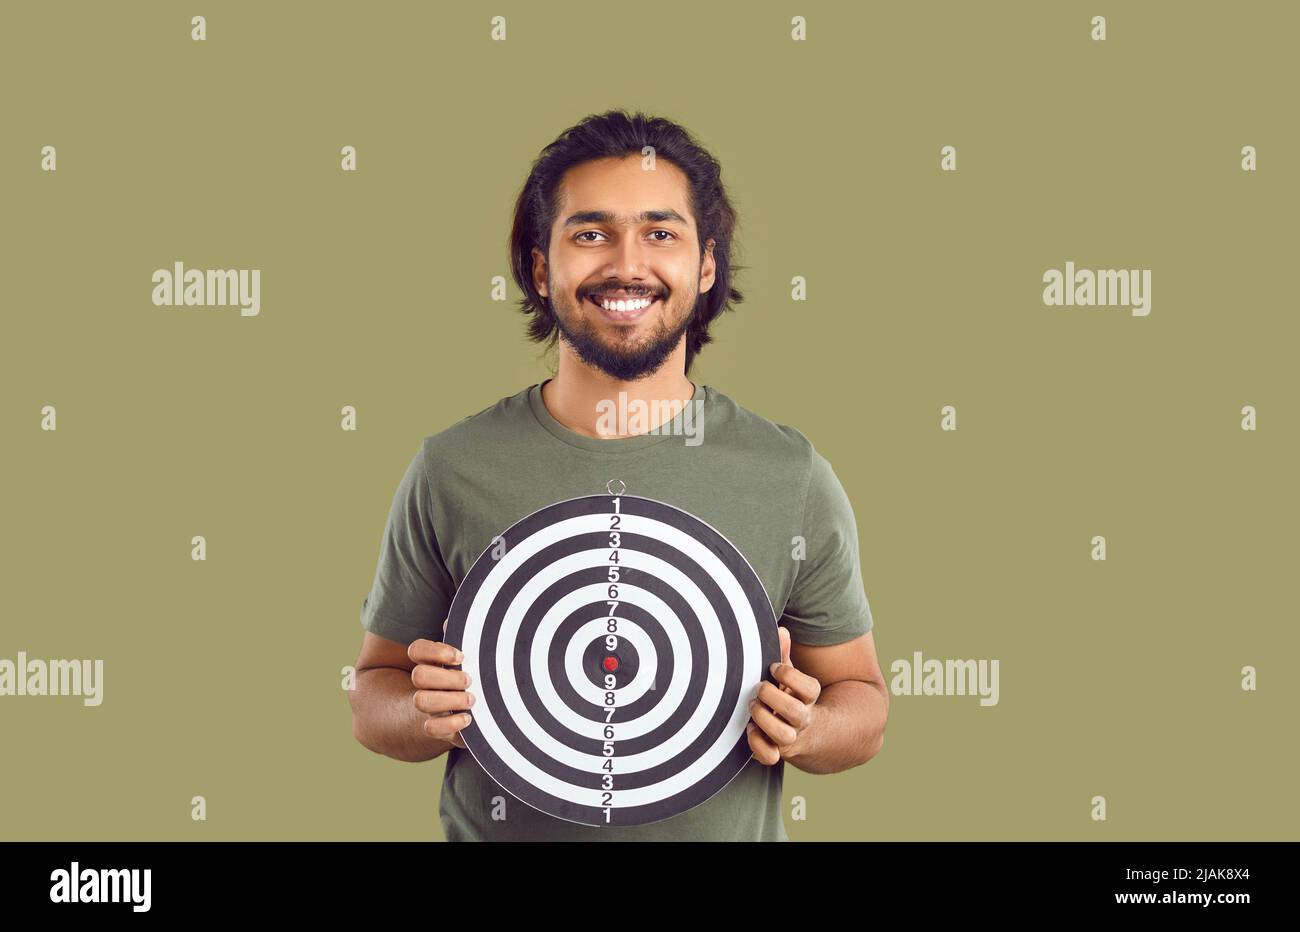 Felice sorridente ragazzo indiano che tiene il bersaglio di tiro per mostrare il concetto di fissare gli obiettivi Foto Stock